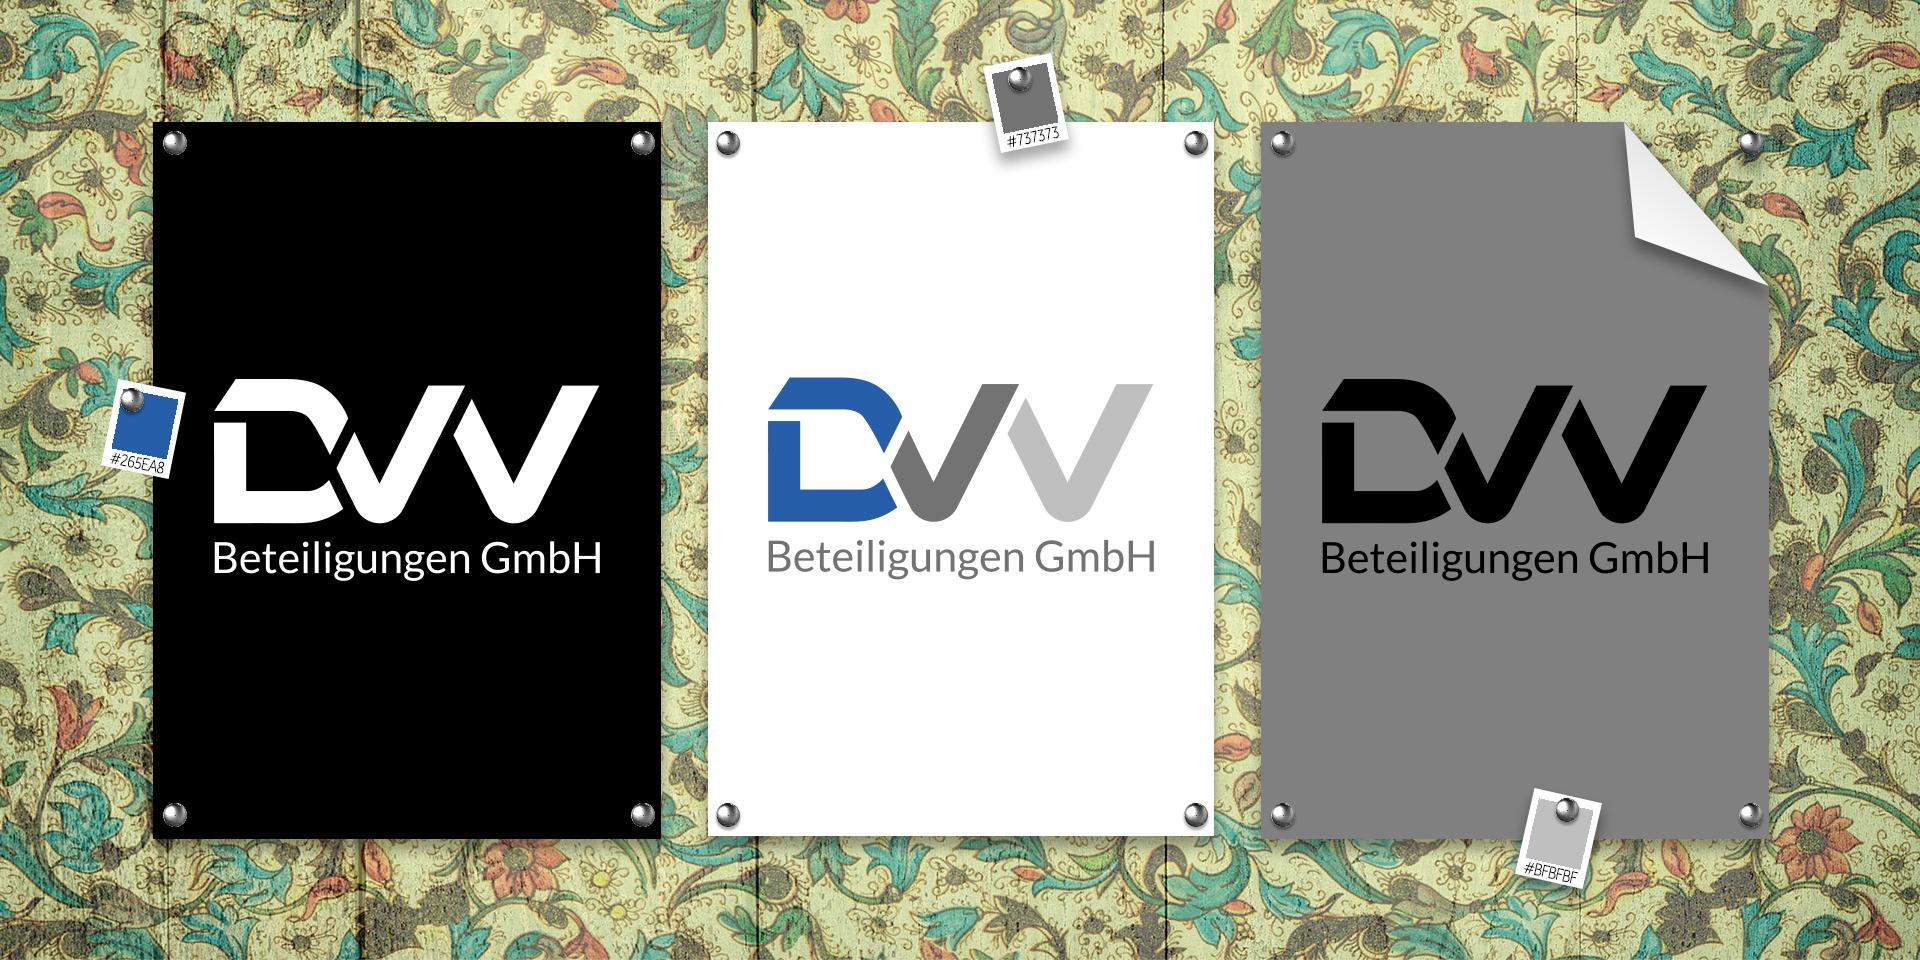 Logoentwicklung DVV Beteiligungen GmbH